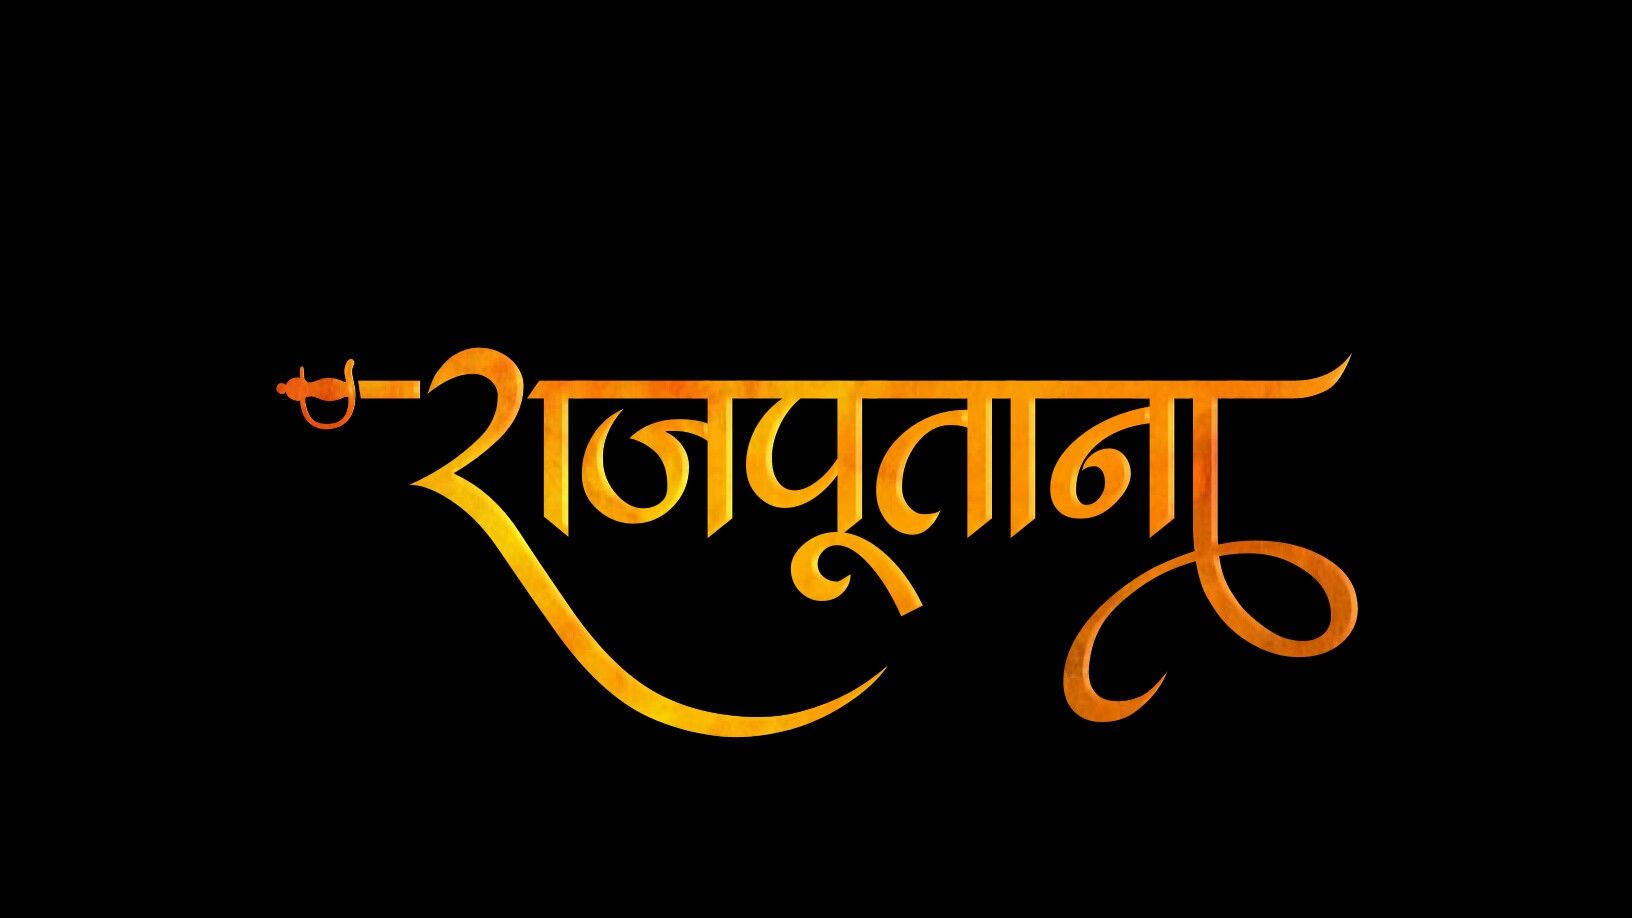 Golden Rajputana Hd Logo Wallpaper